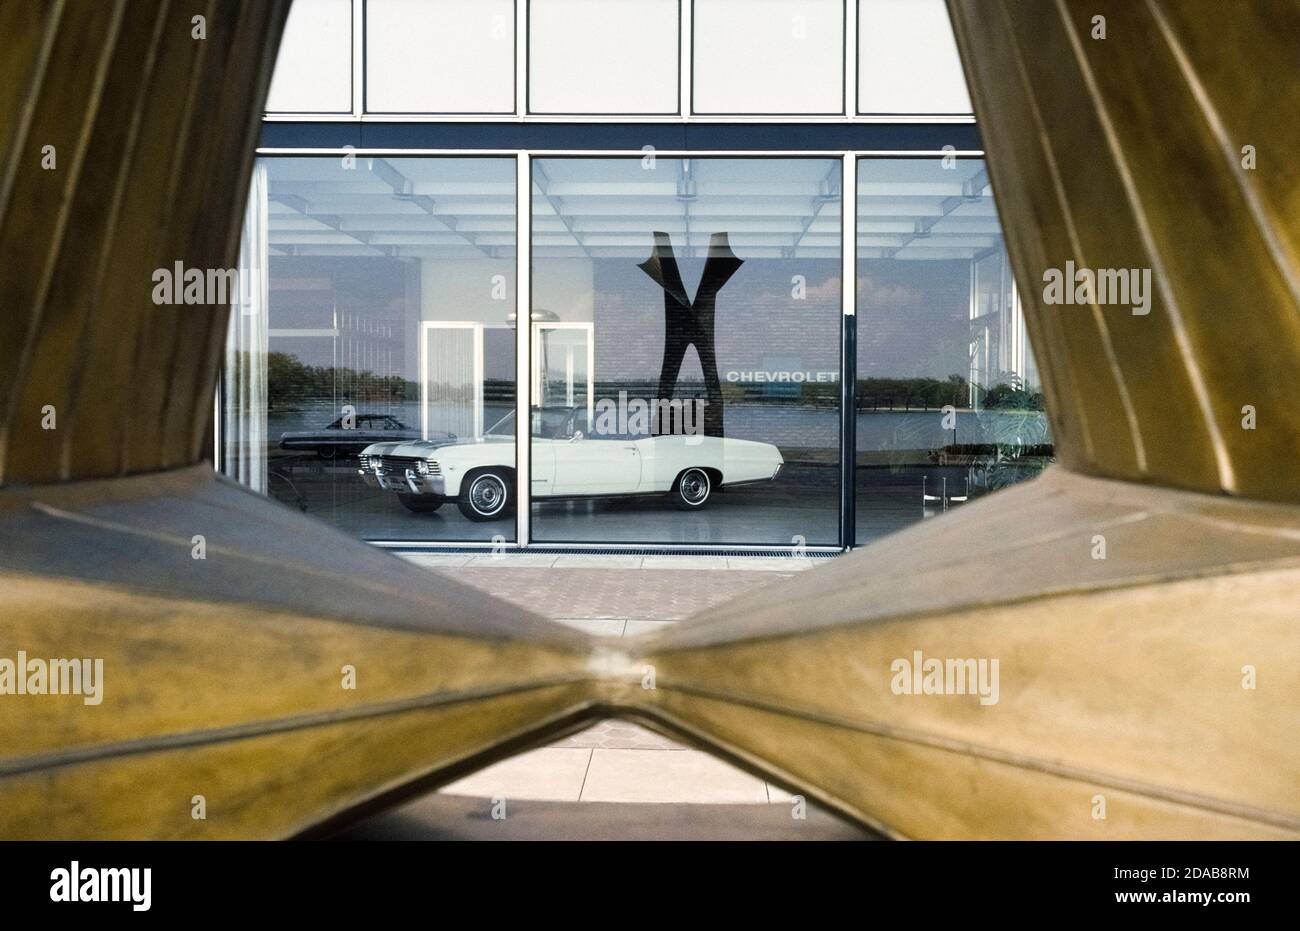 Un Chevrolet Impala convertible de 1967 está enmarcado a través de una escultura al aire libre reflejada en una ventana de exposición en el Centro Técnico General Motors en el suburbio de Detroit Warren, Michigan, EE.UU. Diseñado por arquitectos de padre e hijo de renombre internacional, Eliel y Eero Saarinen, el Centro Tecnológico modernista de GM representó a la América industrial cuando abrió sus puertas en 1956 con 25 edificios repartidos en 320 acres (130 hectáreas). El complejo ampliamente elogiado introdujo un nuevo y novedoso tema arquitectónico: El campus corporativo. Foto de stock